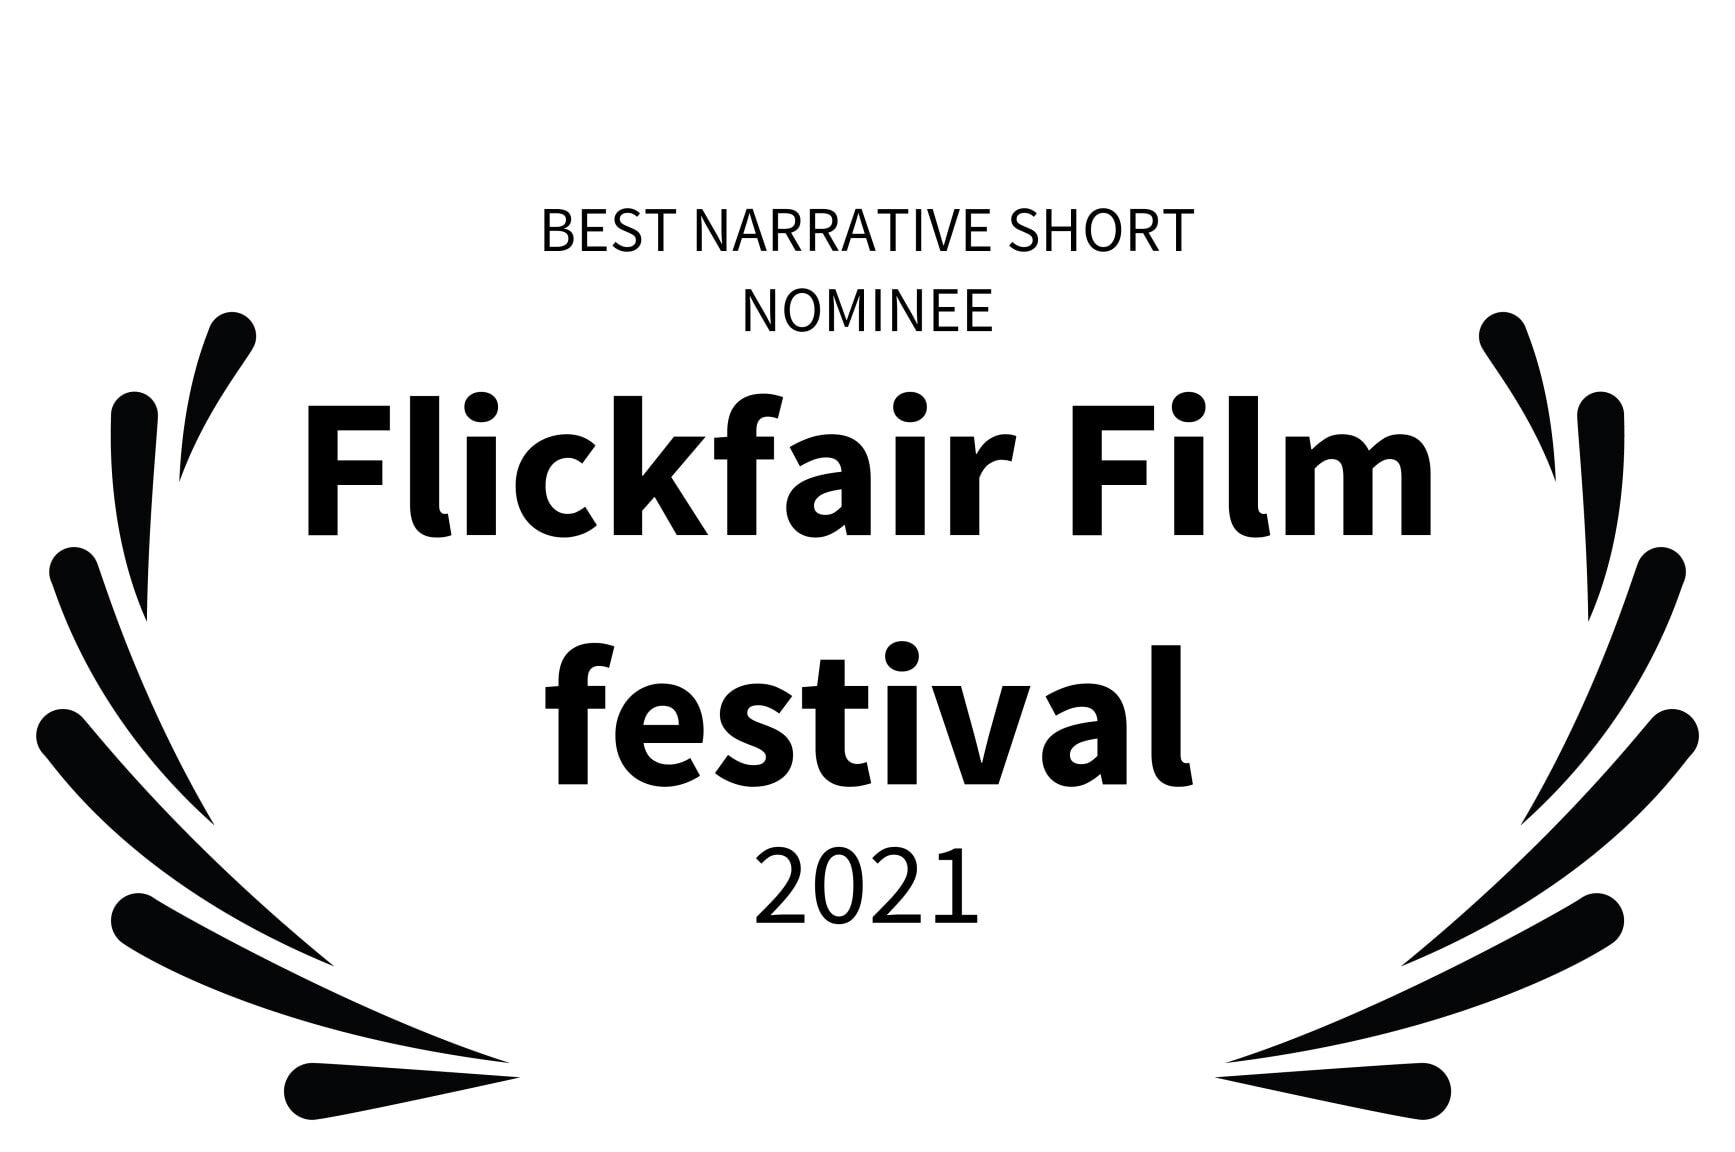 BEST NARRATIVE SHORT NOMINEE - Flickfair Film festival - 2021